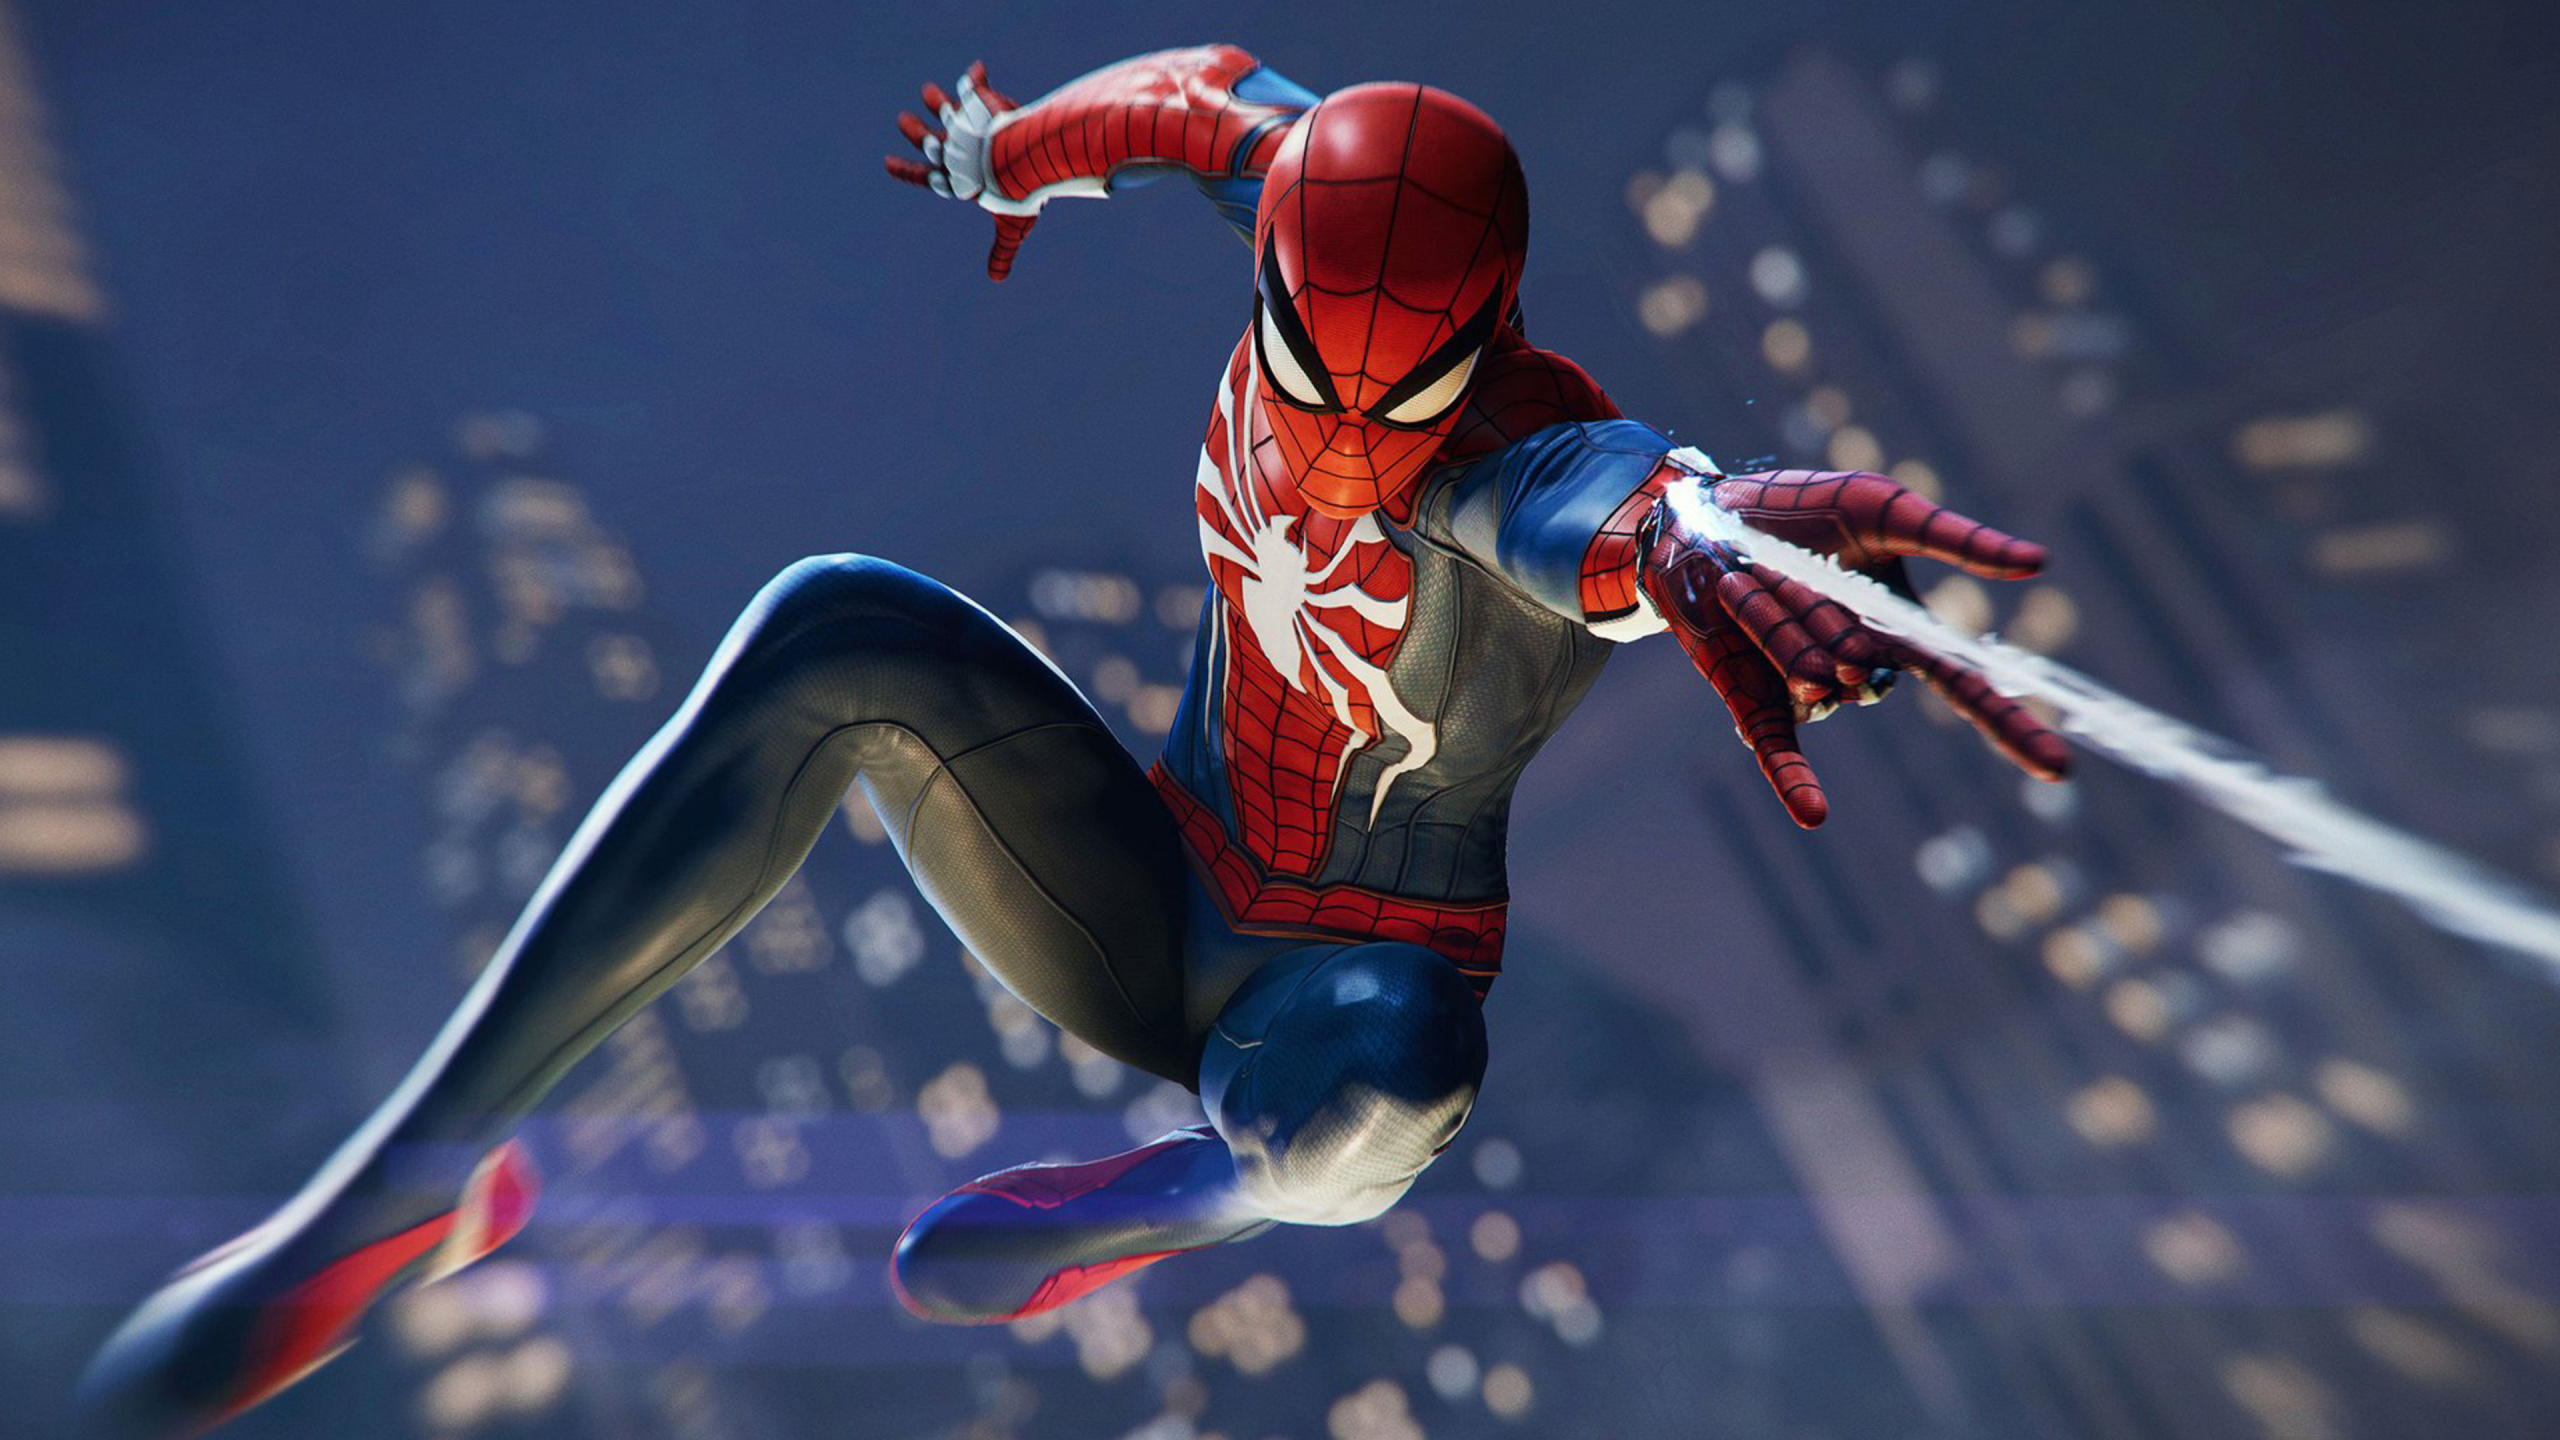 Spider-man, Insomniac Games, Superhéroe, Figura de Acción, Playstation 4. Wallpaper in 2560x1440 Resolution